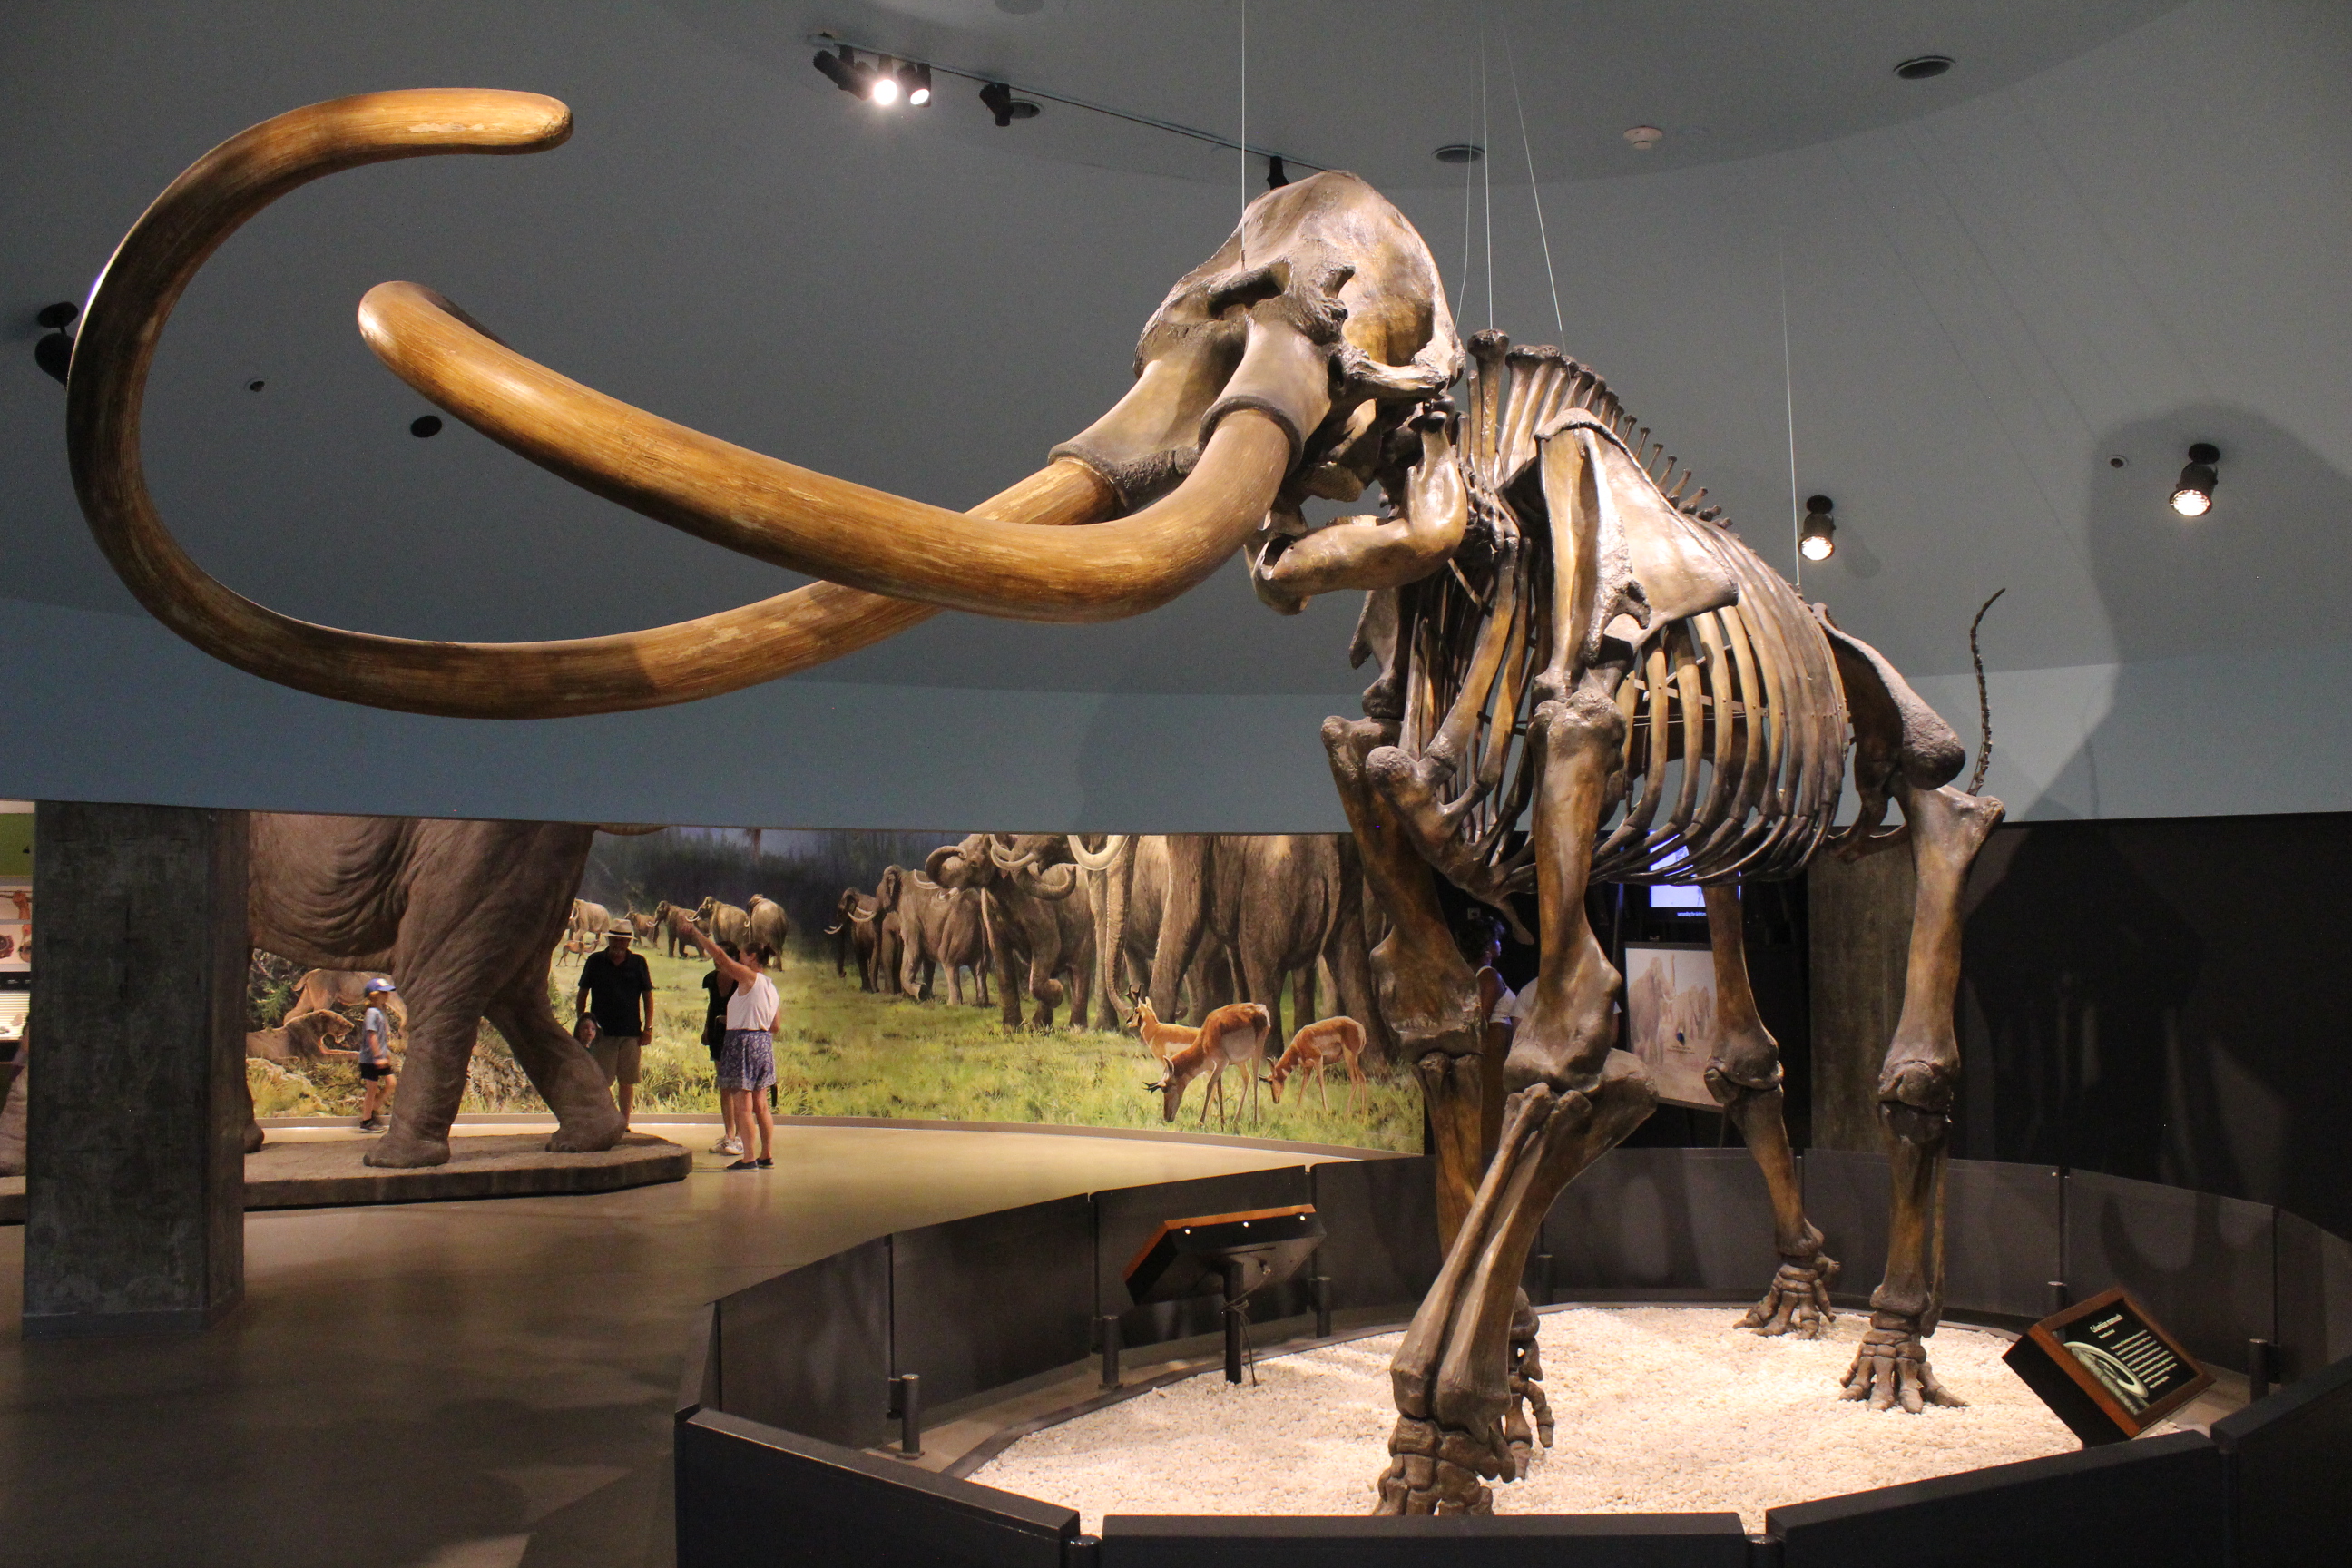 Mammoth - Wikipedia